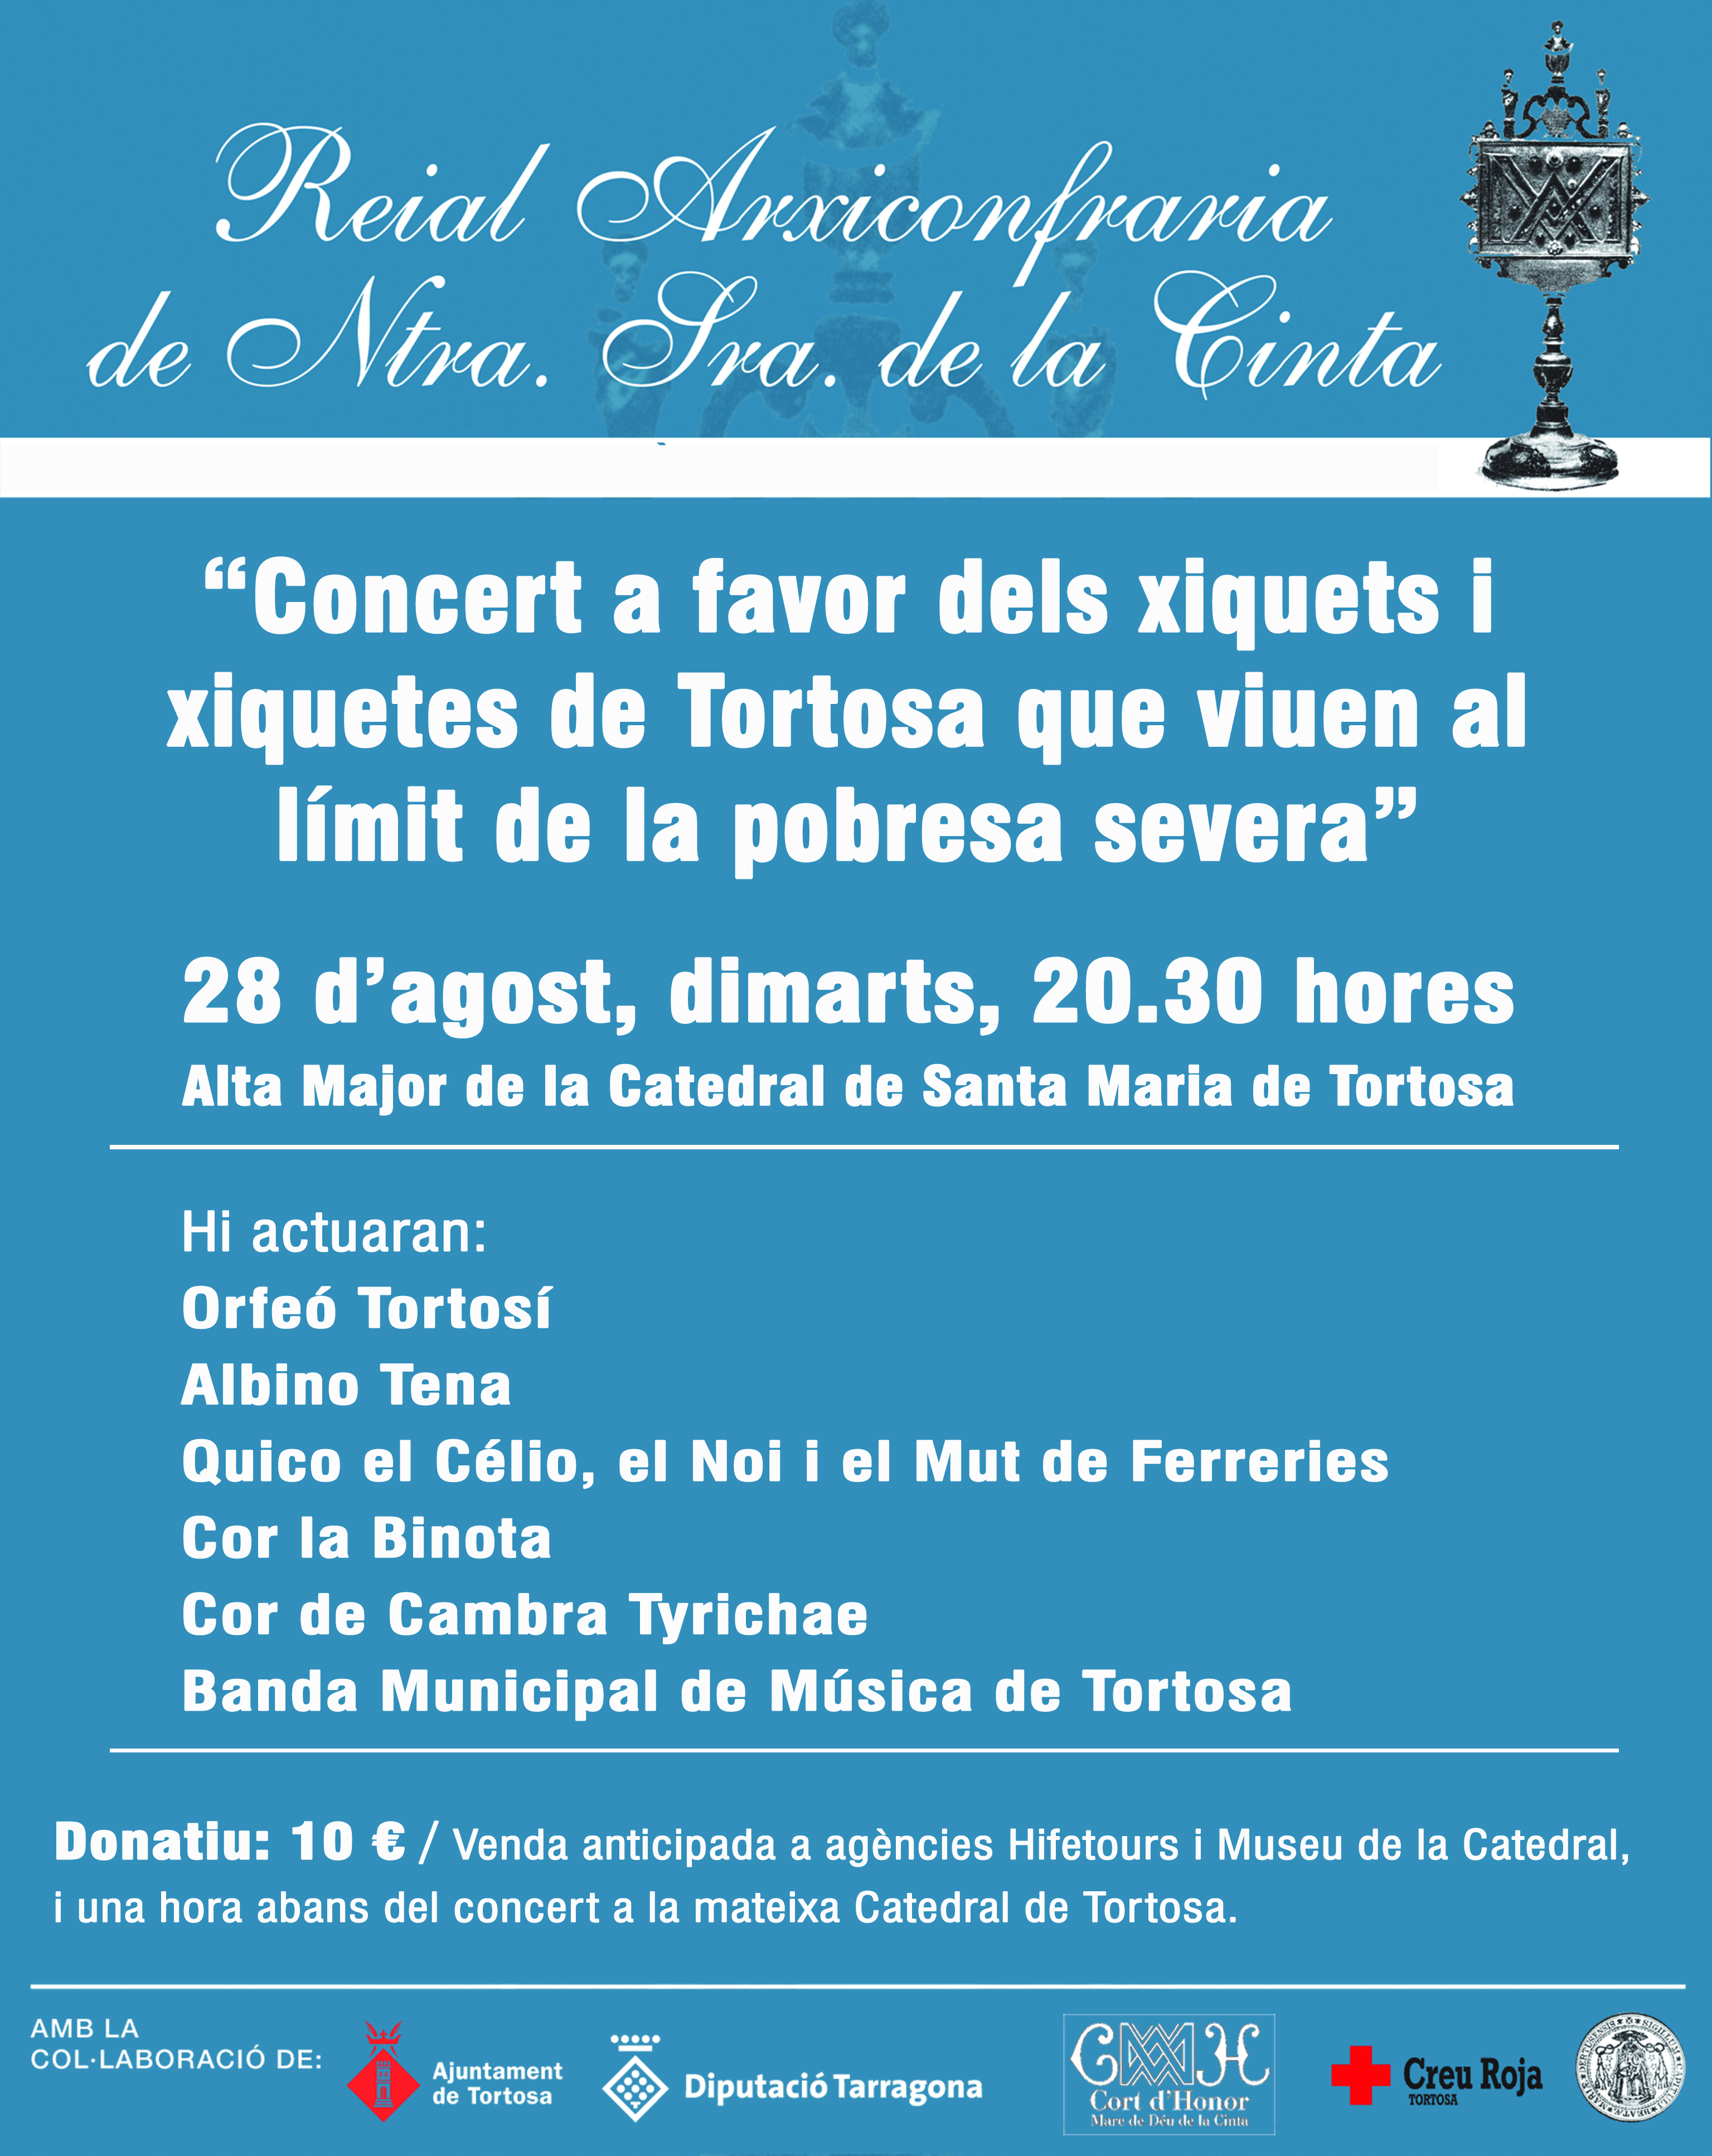 El 28 d’agost la Reial Arxiconfraria de la Cinta organitza un concert a la catedral de Tortosa per recaptar fons per la pobresa infantil